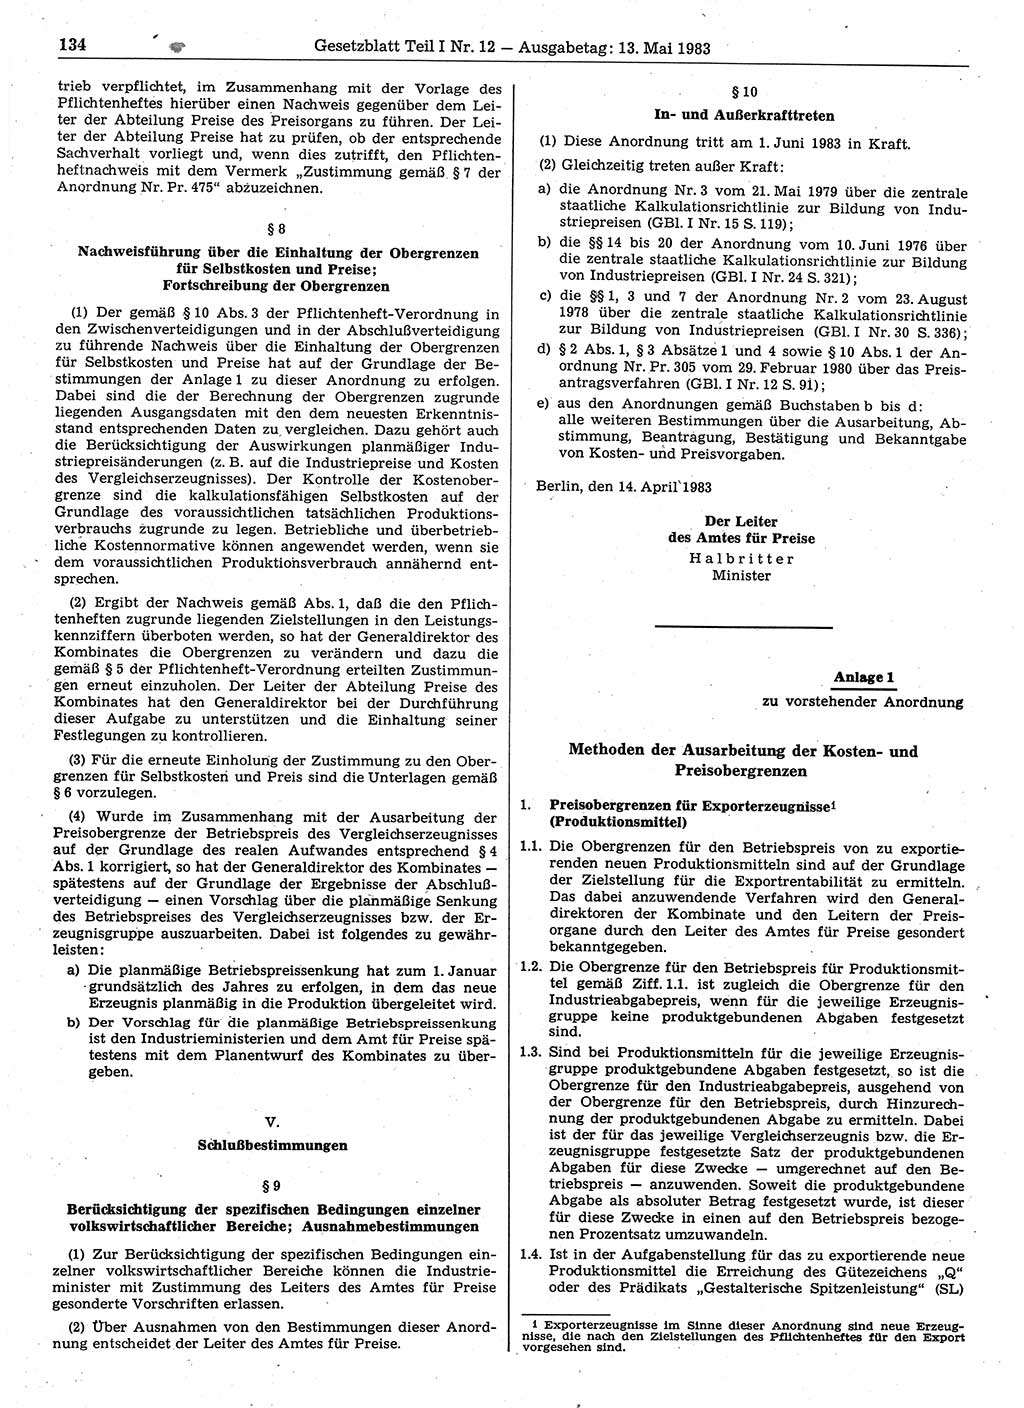 Gesetzblatt (GBl.) der Deutschen Demokratischen Republik (DDR) Teil Ⅰ 1983, Seite 134 (GBl. DDR Ⅰ 1983, S. 134)